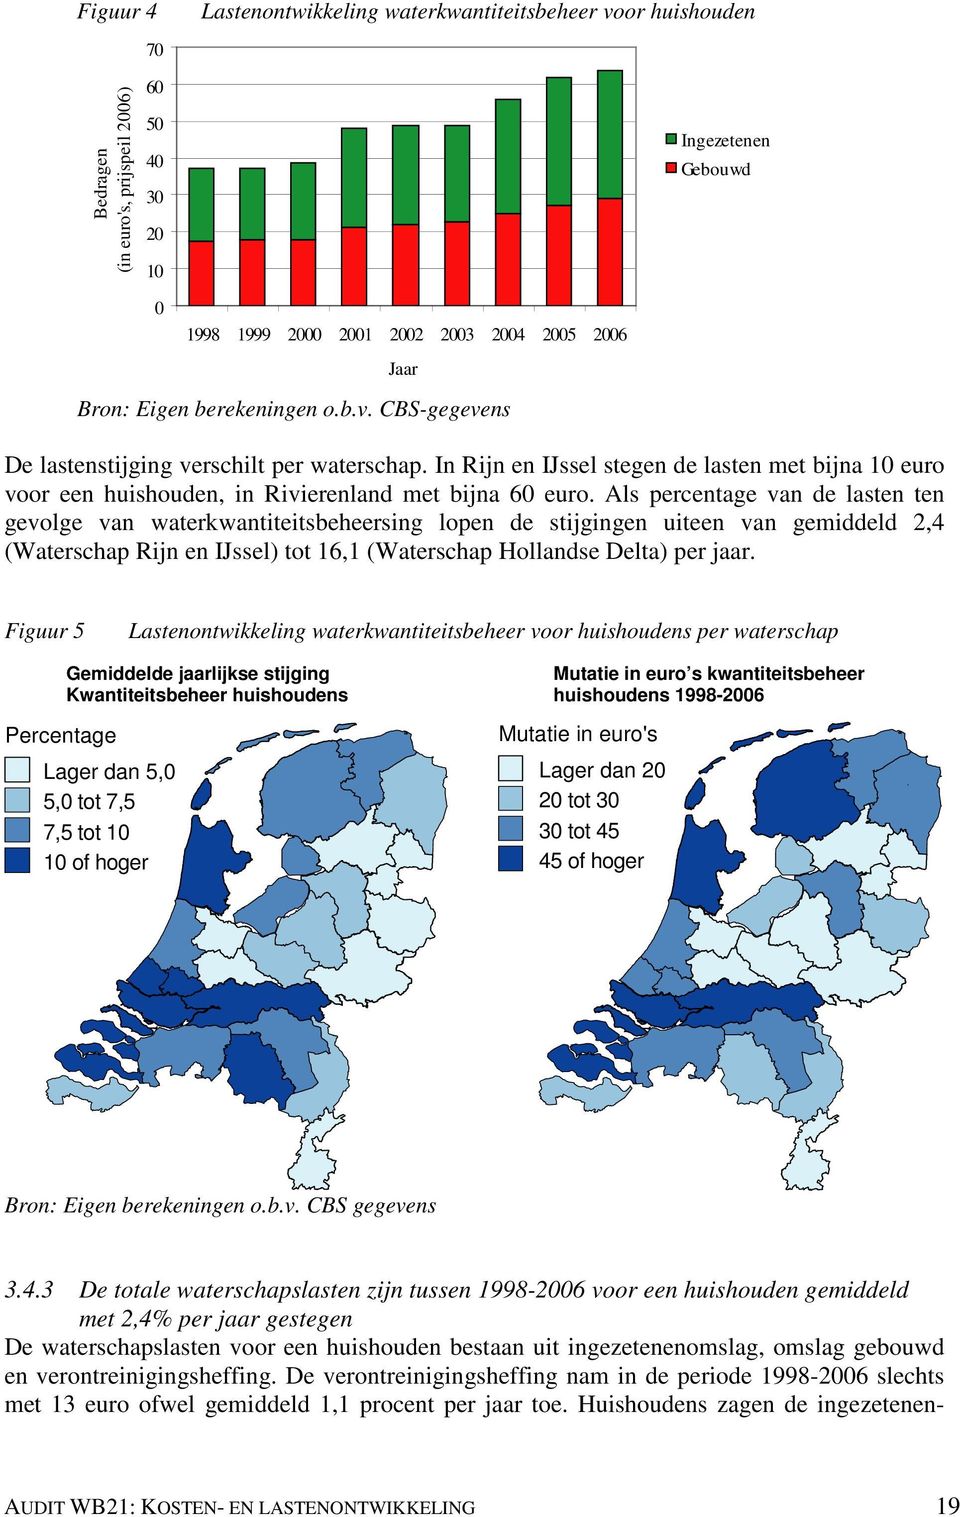 Als percentage van de lasten ten gevolge van waterkwantiteitsbeheersing lopen de stijgingen uiteen van gemiddeld 2,4 (Waterschap Rijn en IJssel) tot 16,1 (Waterschap Hollandse Delta) per jaar.